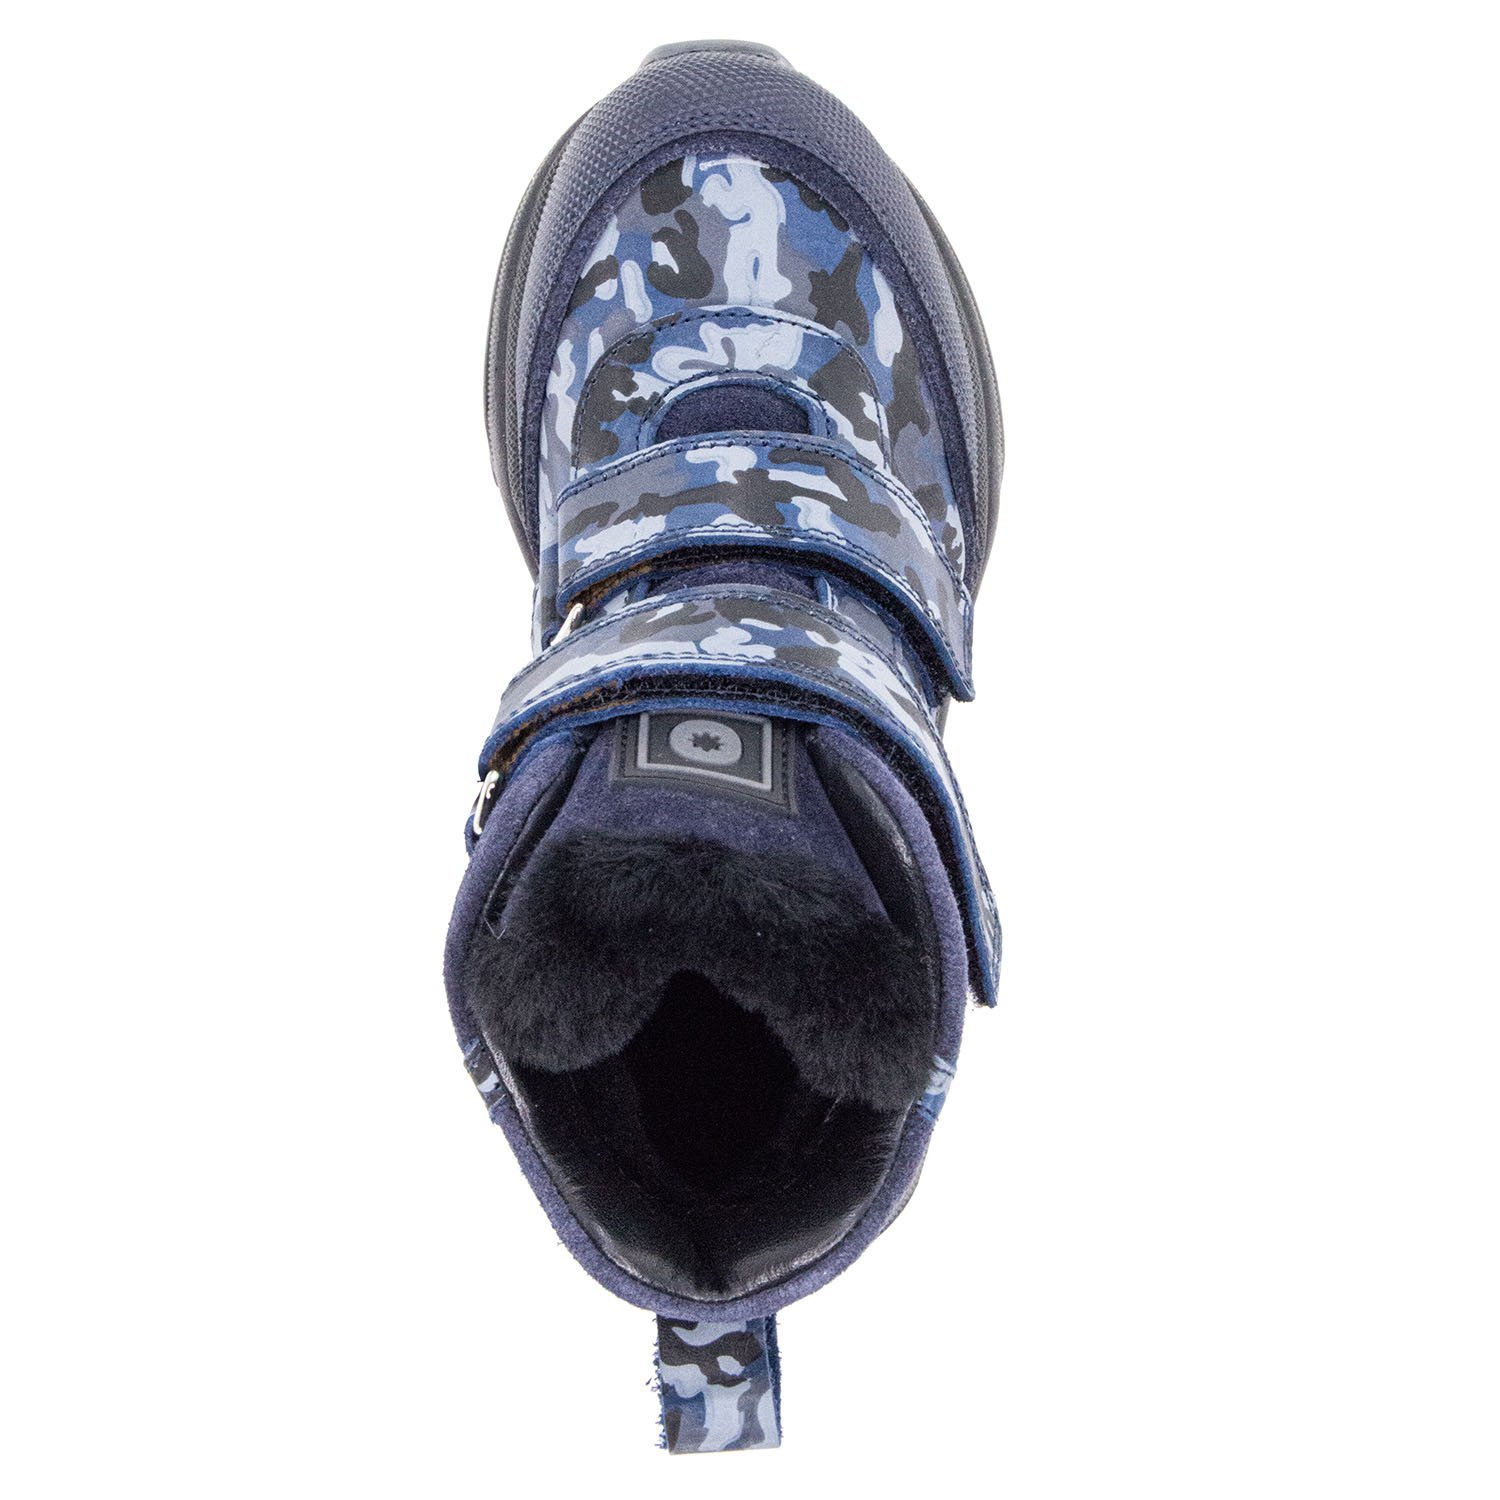 Детские ботинки ORTHOBOOM 88123-42 сине-стальной камуфляж